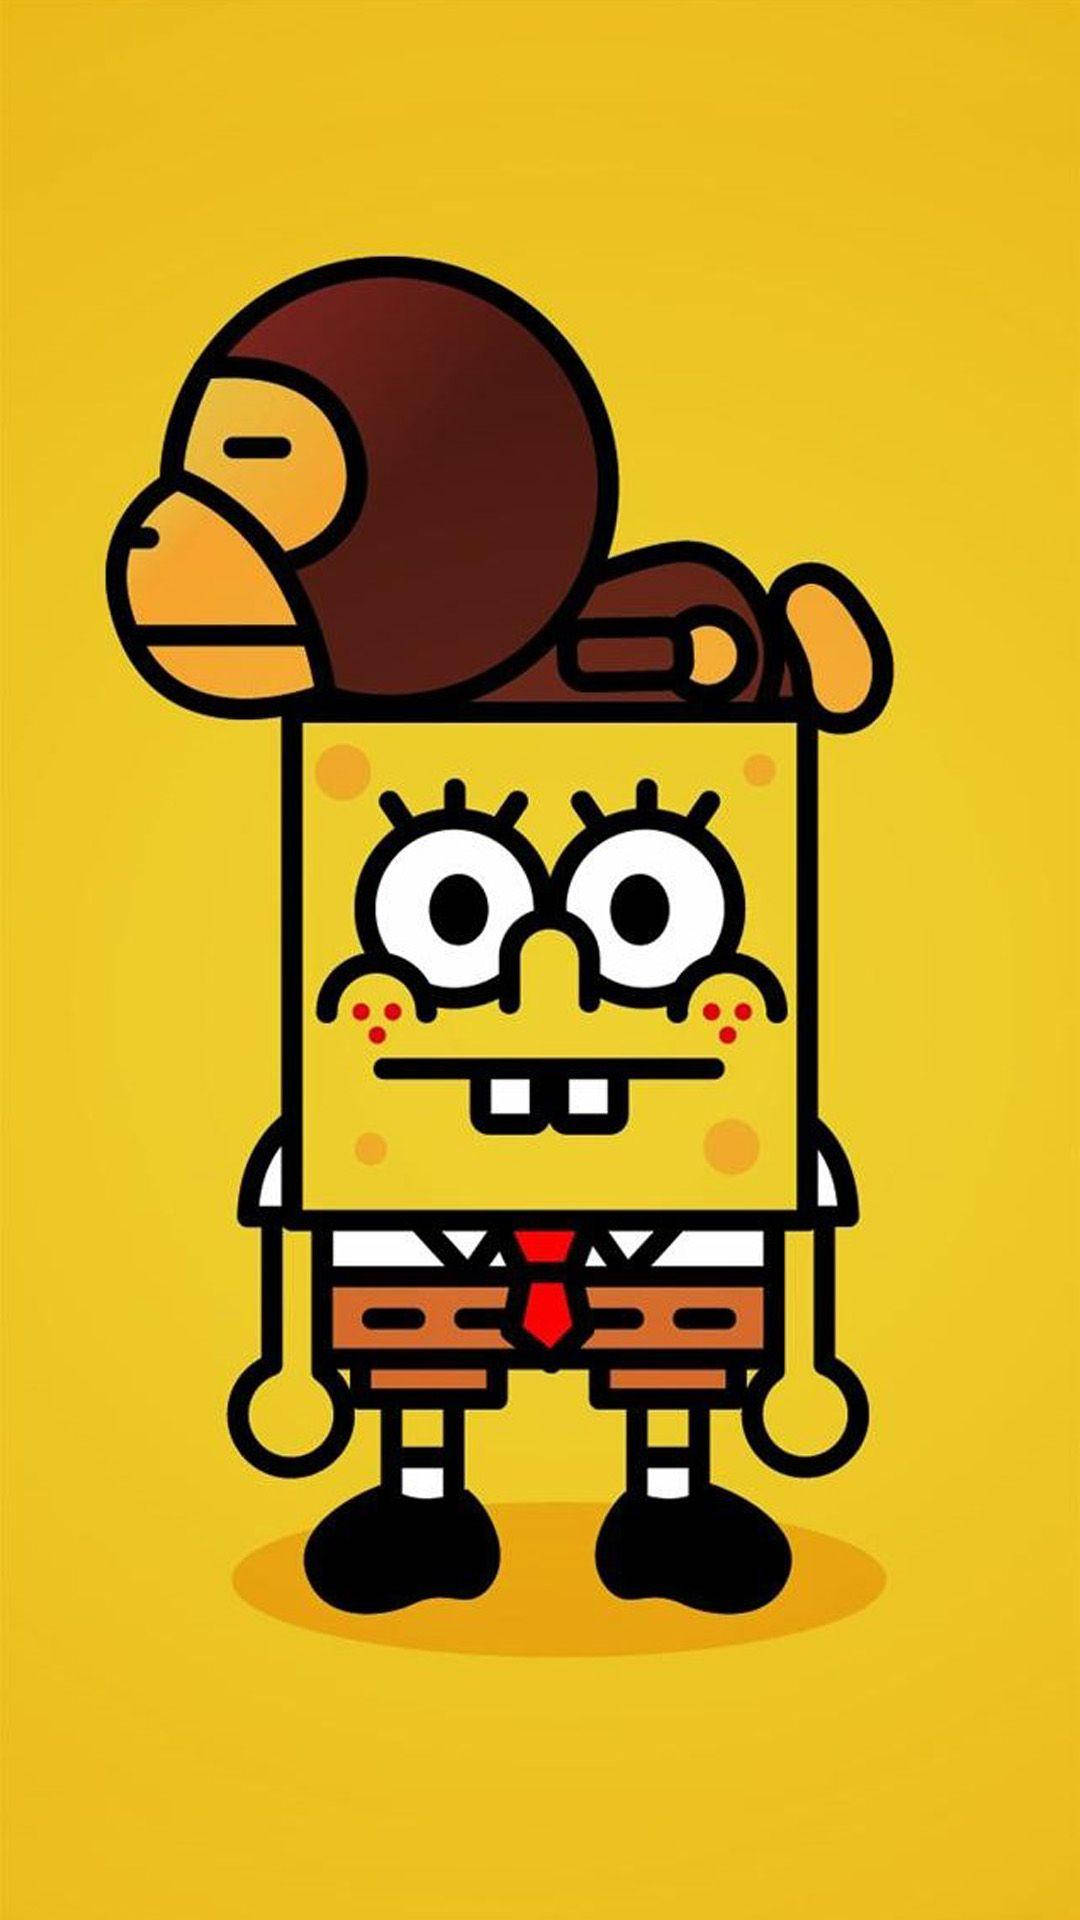 Spongebobmit Affe Für Das Iphone X, Als Cartoon. Wallpaper